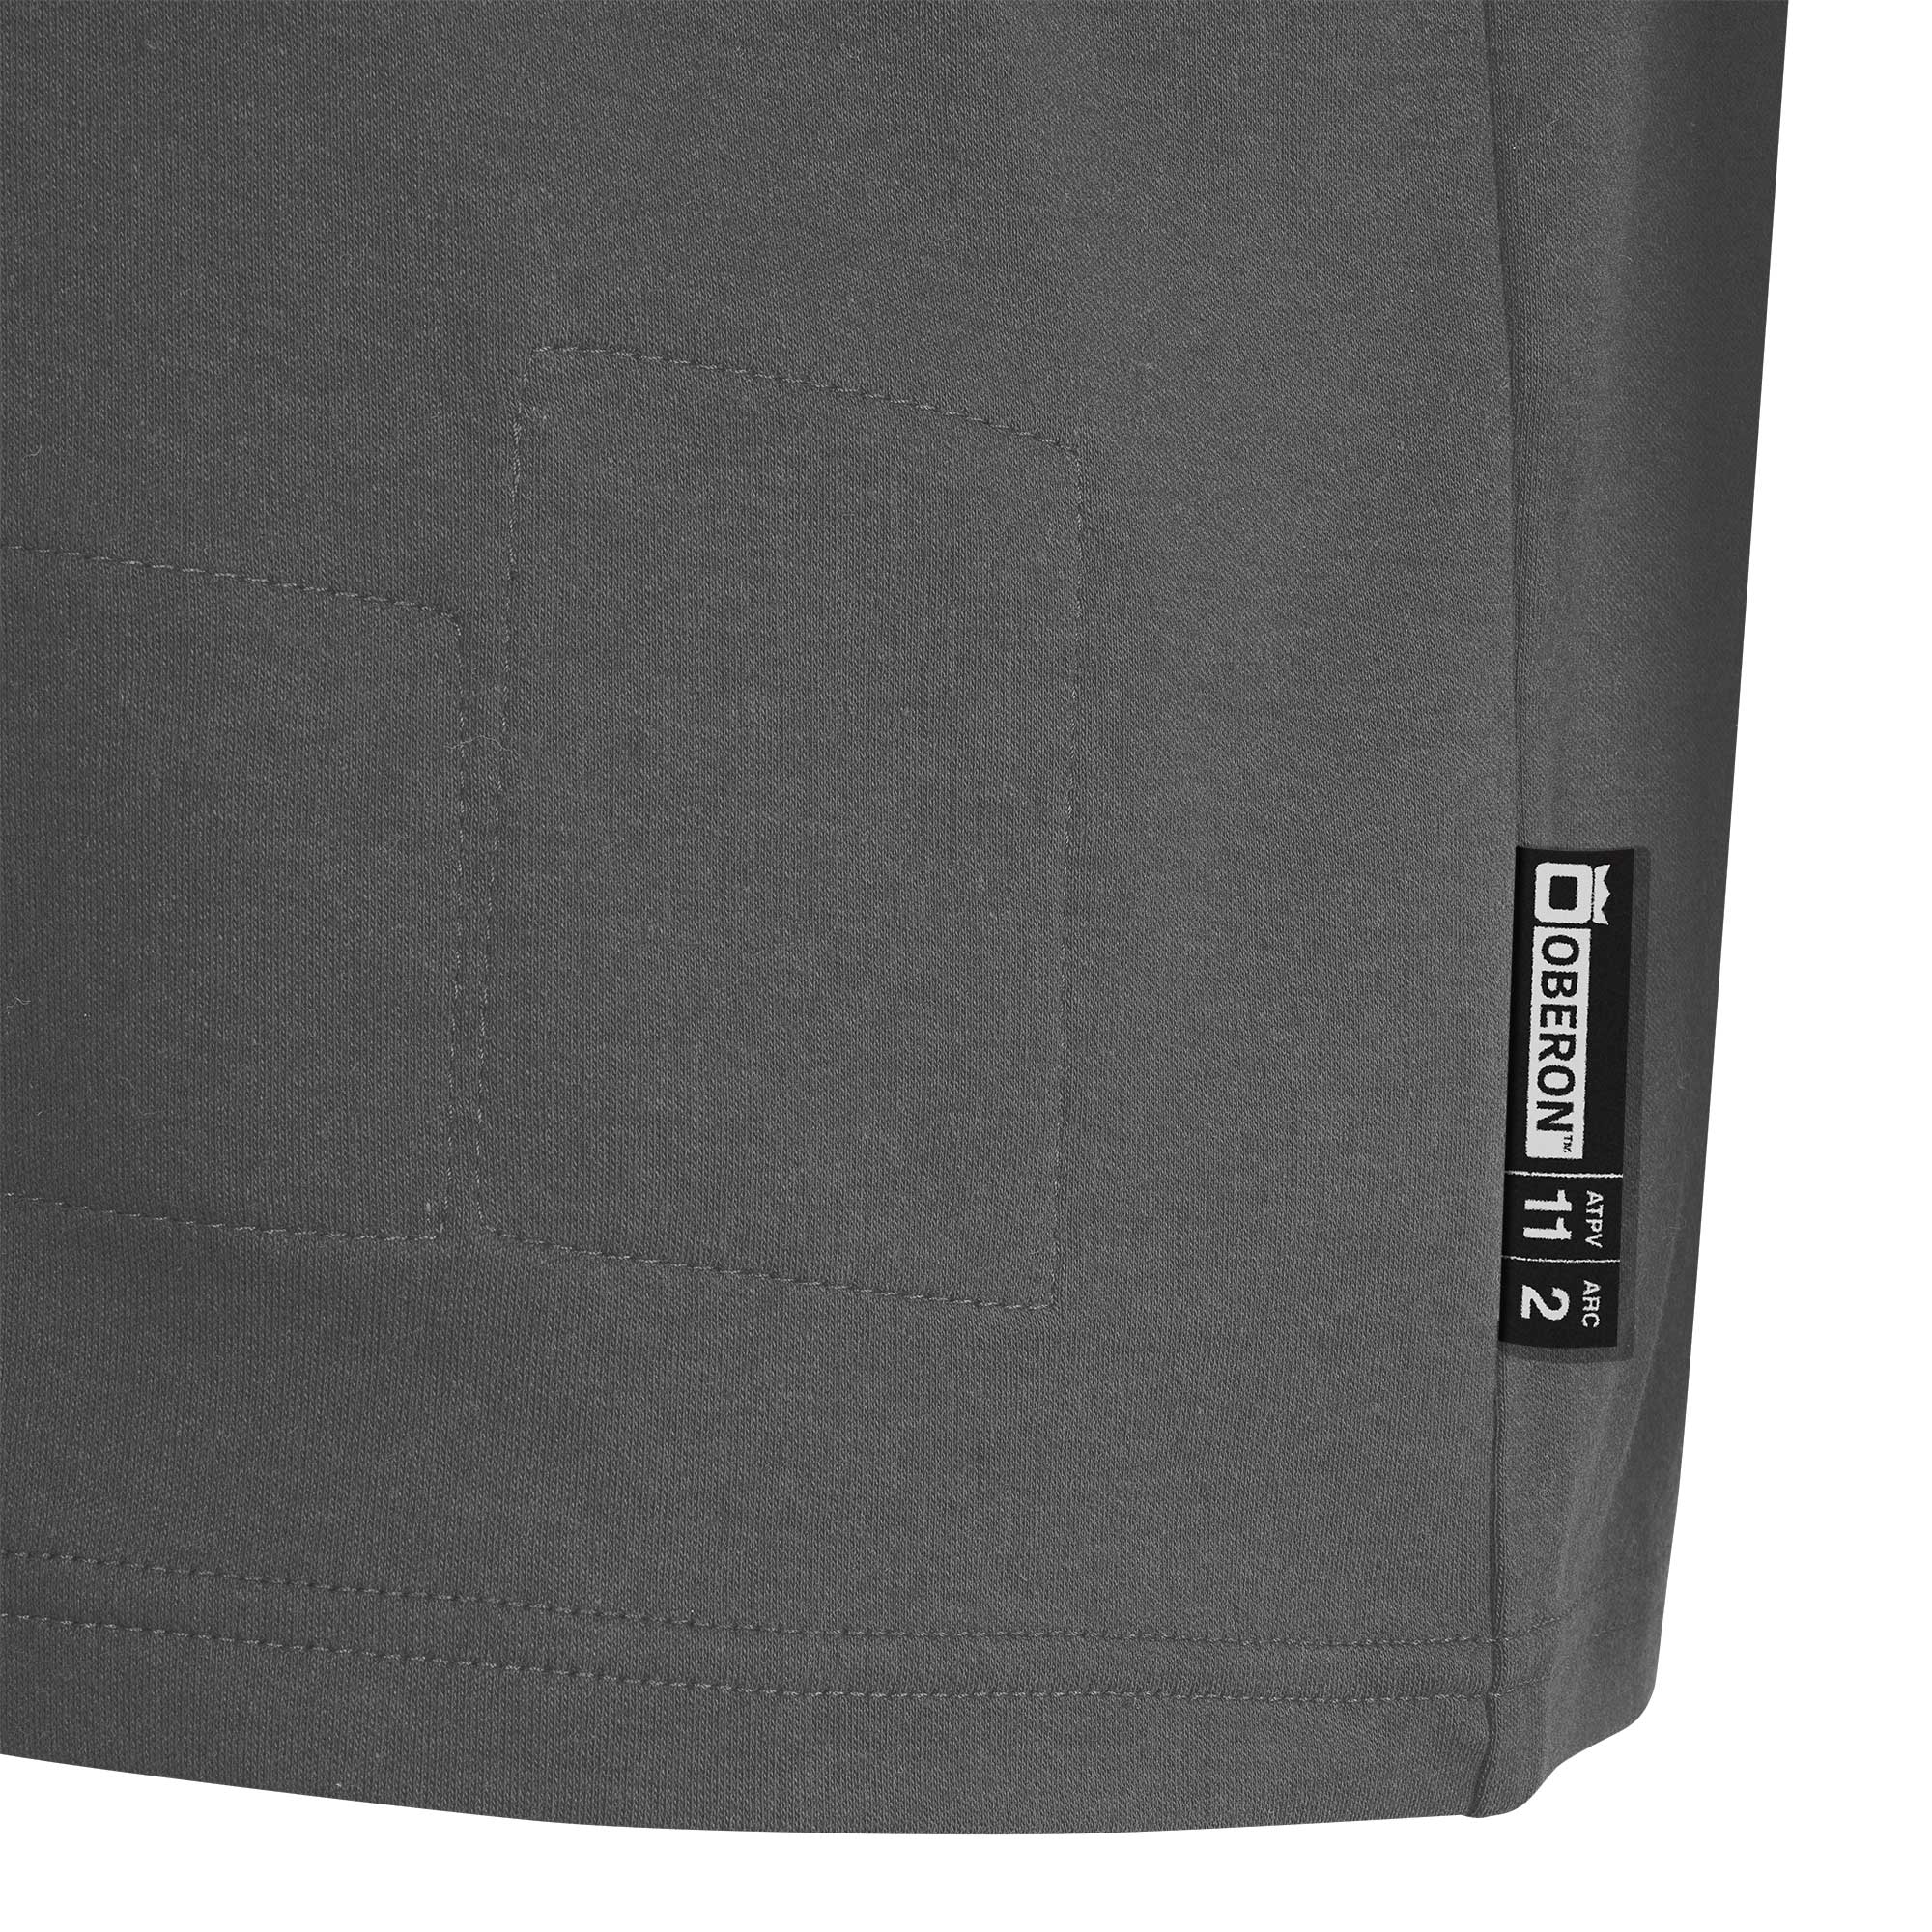 Oberon FR Cotton Short-Sleeved T-Shirt ZFI104